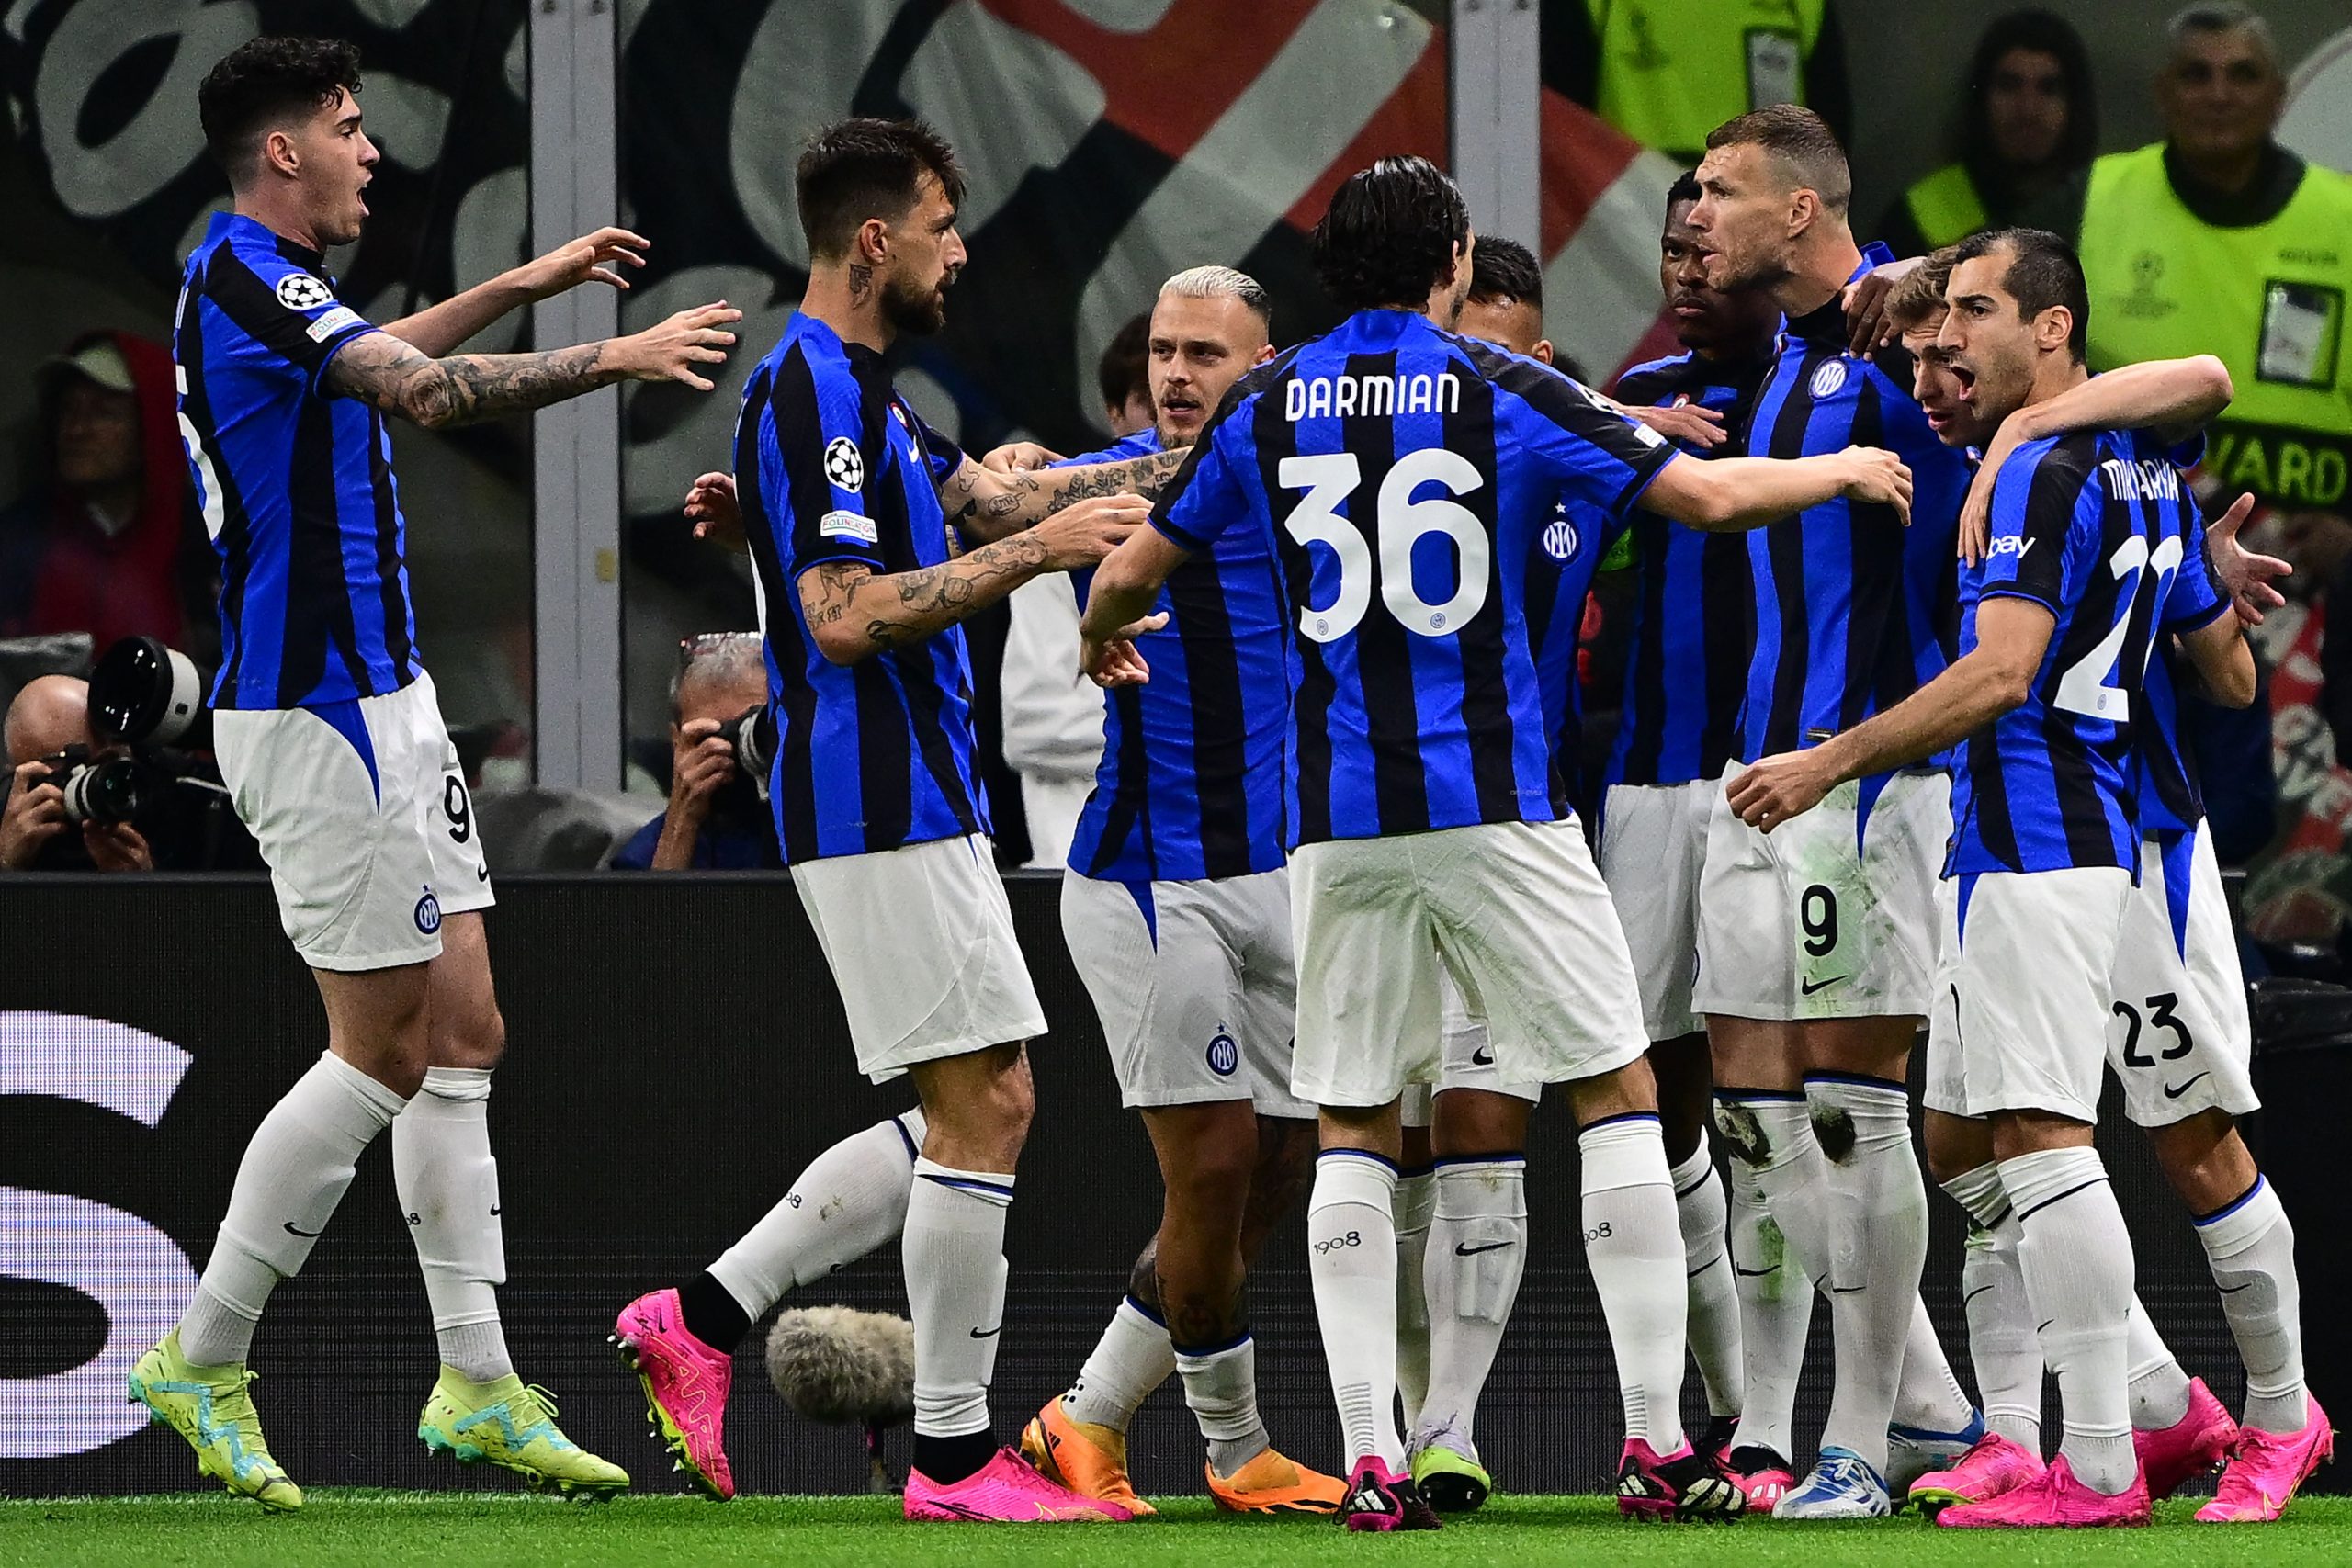 Internazionale venceu o Milan no Derby della Madonnina